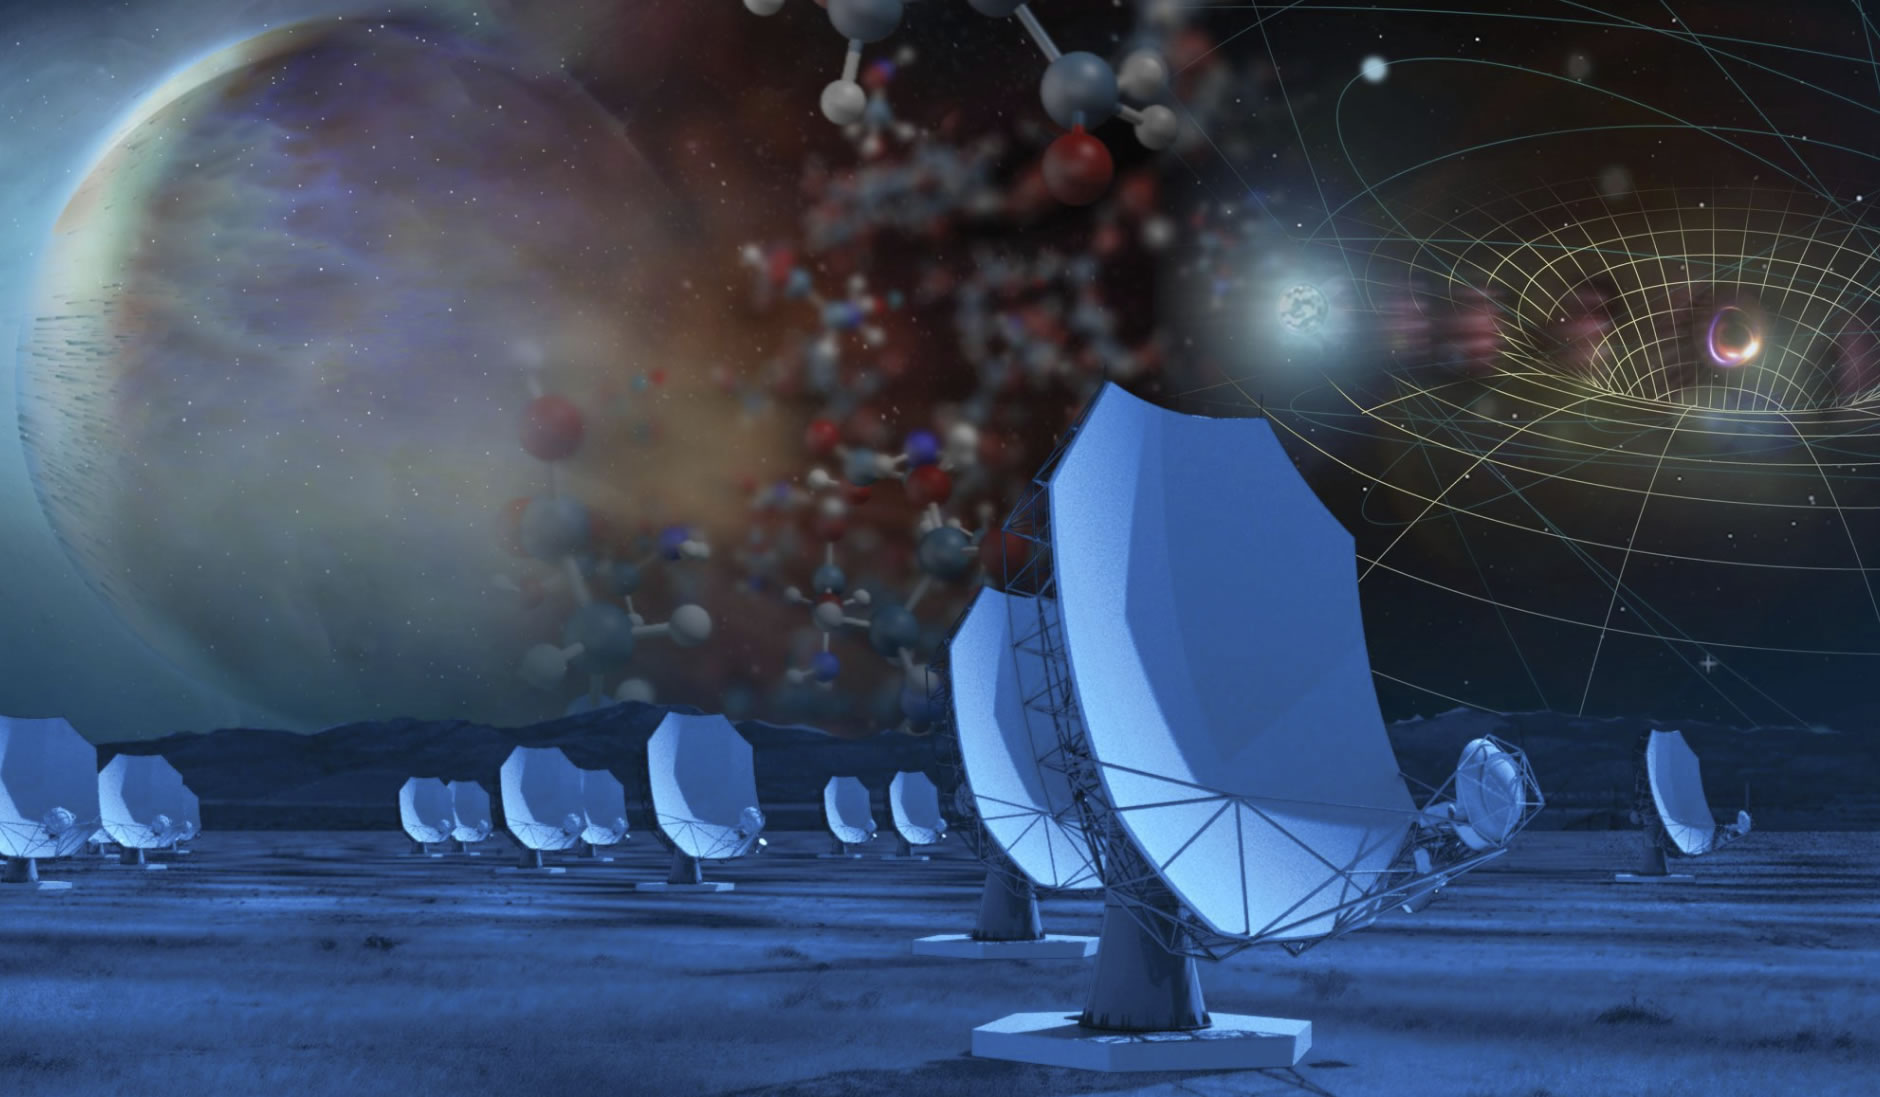 10年天文学计划Astro2020将建立下一代甚大阵ngVLA来研究系外行星和黑洞